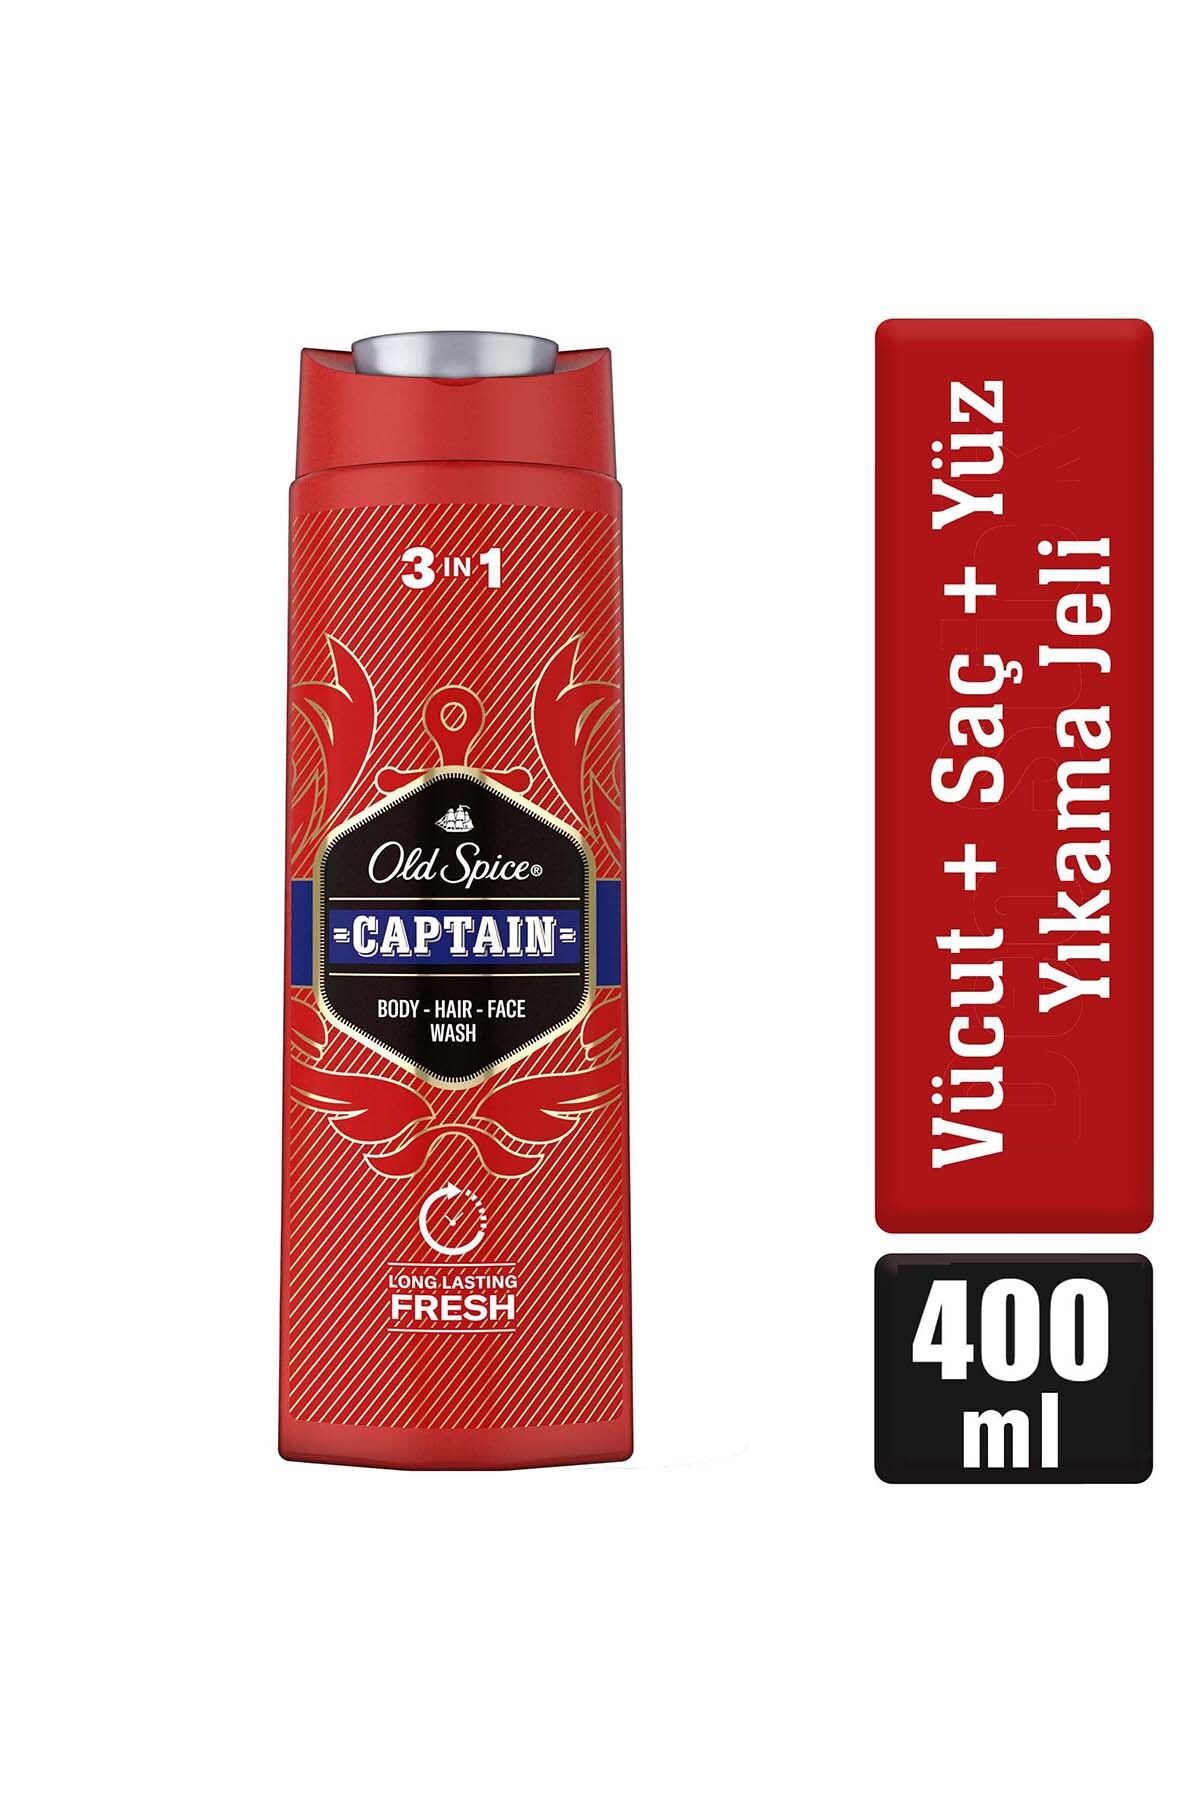 Old Spice Captain Erkekler Için Duş Jeli Ve Şampuan 400 ml